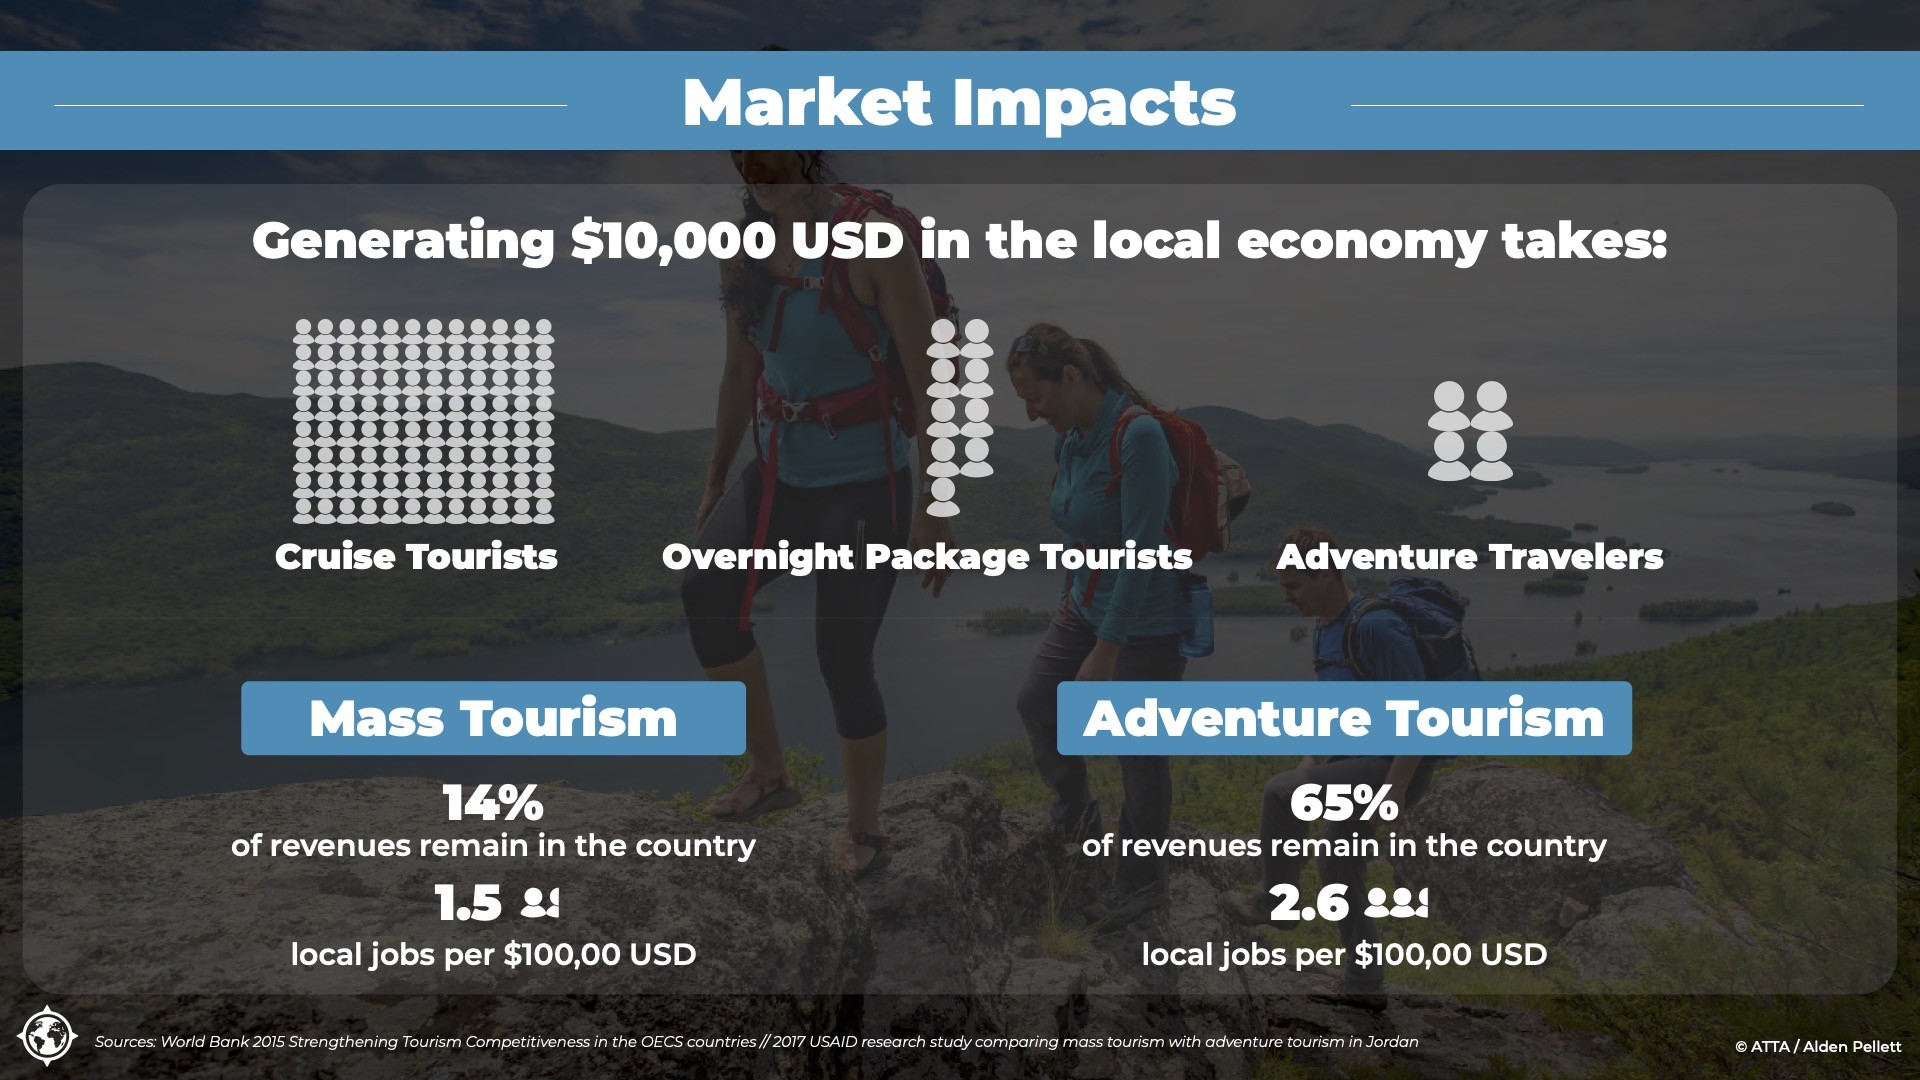 ATTA Adventure Tourism spending